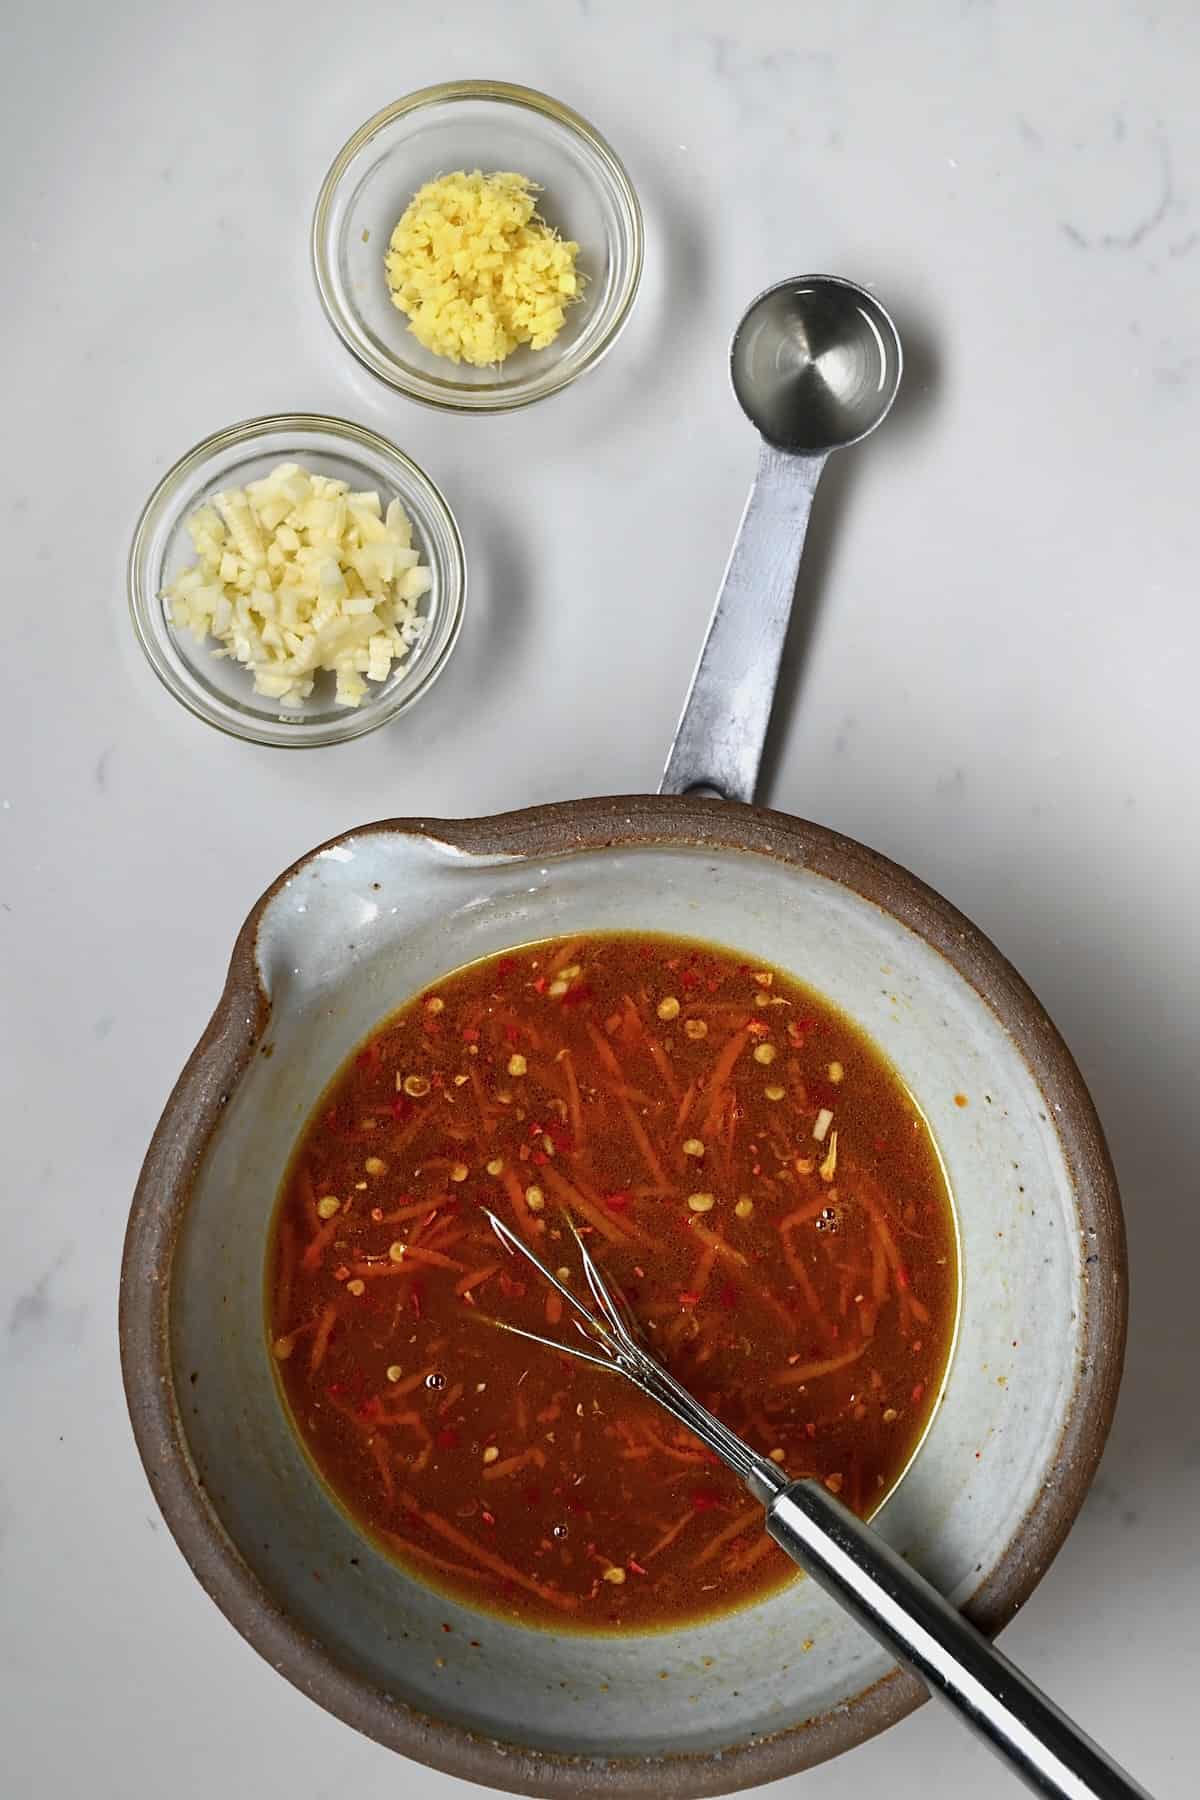 Prepared orange sauce in a bowl